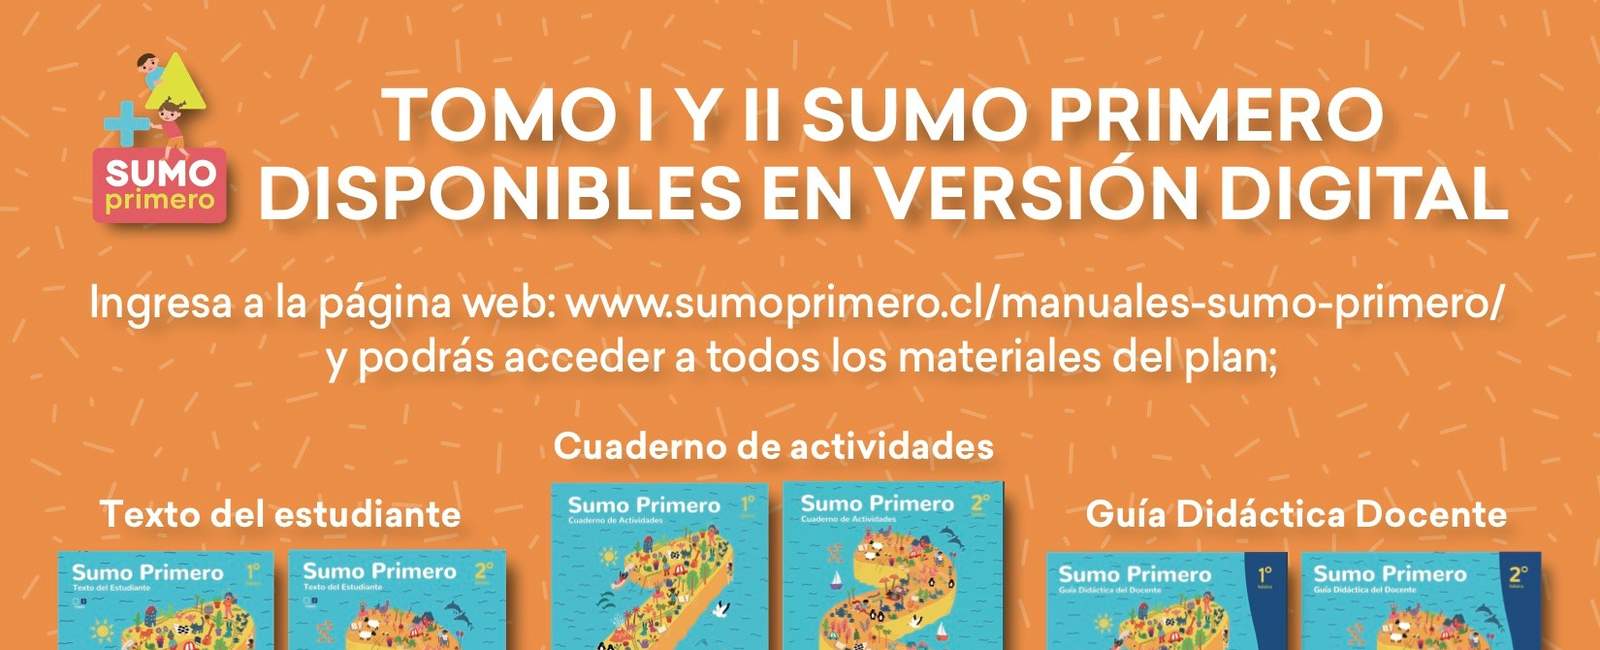 ¡Tomo II Sumo Primero disponible en versión digital!